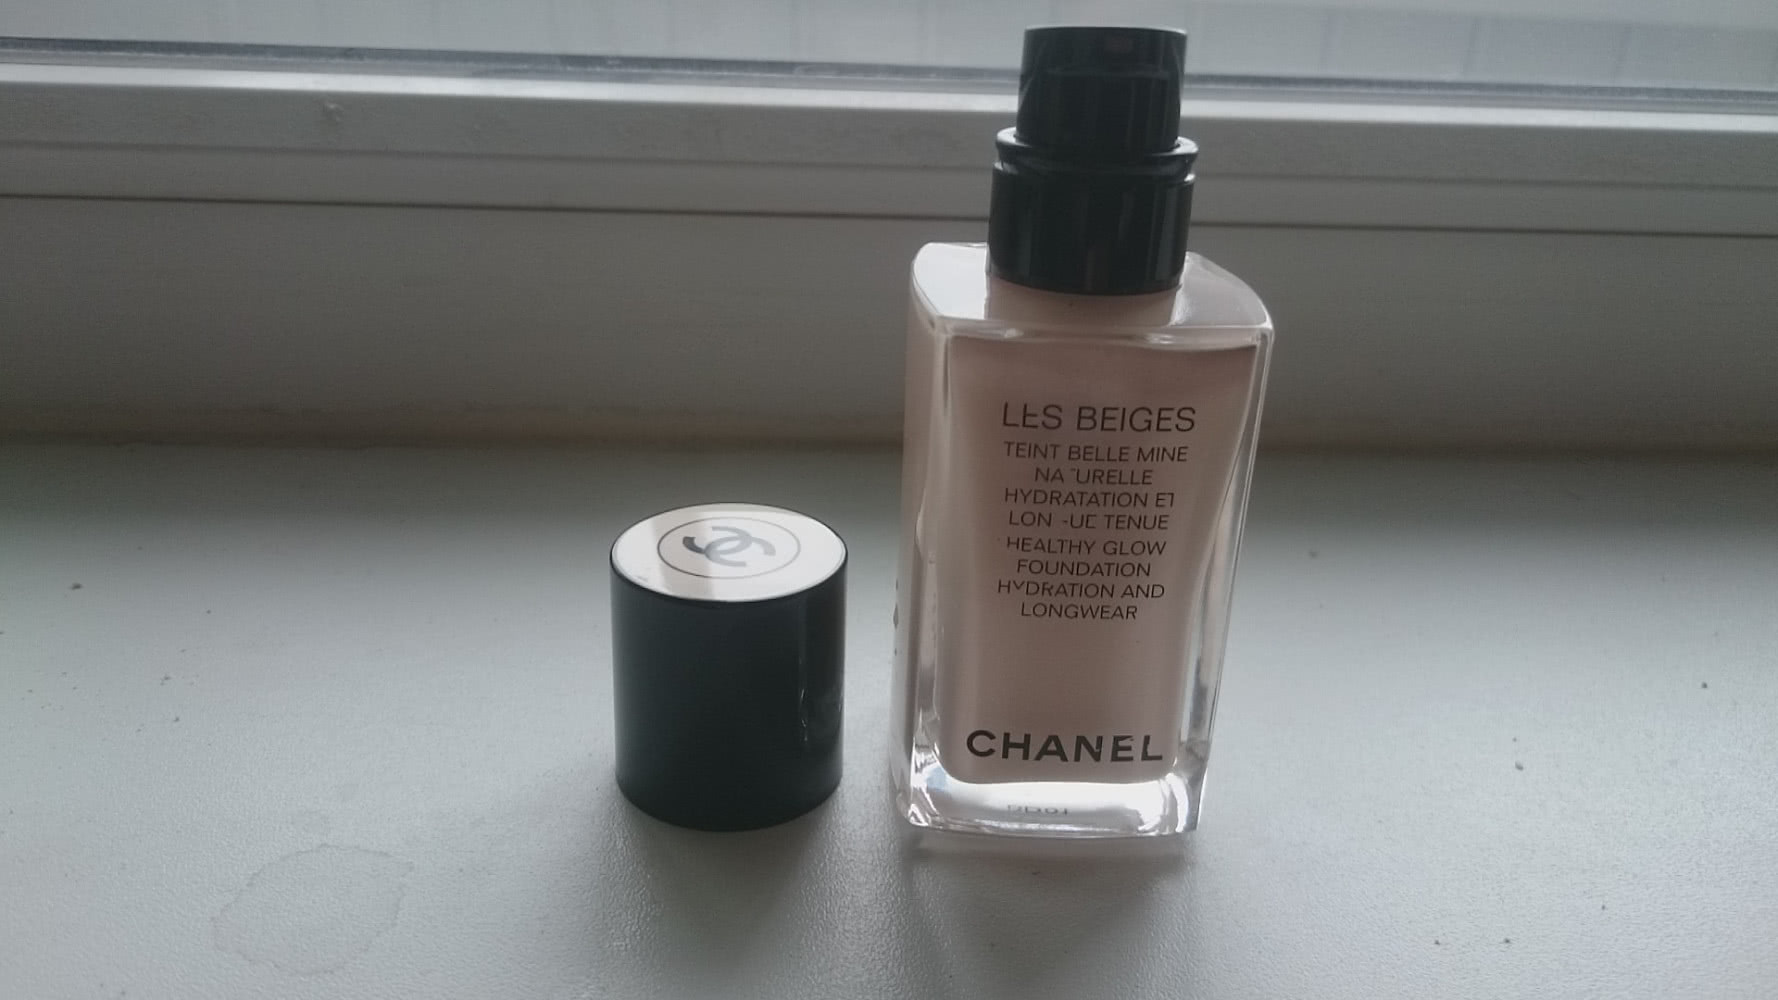 Chanel тональный крем